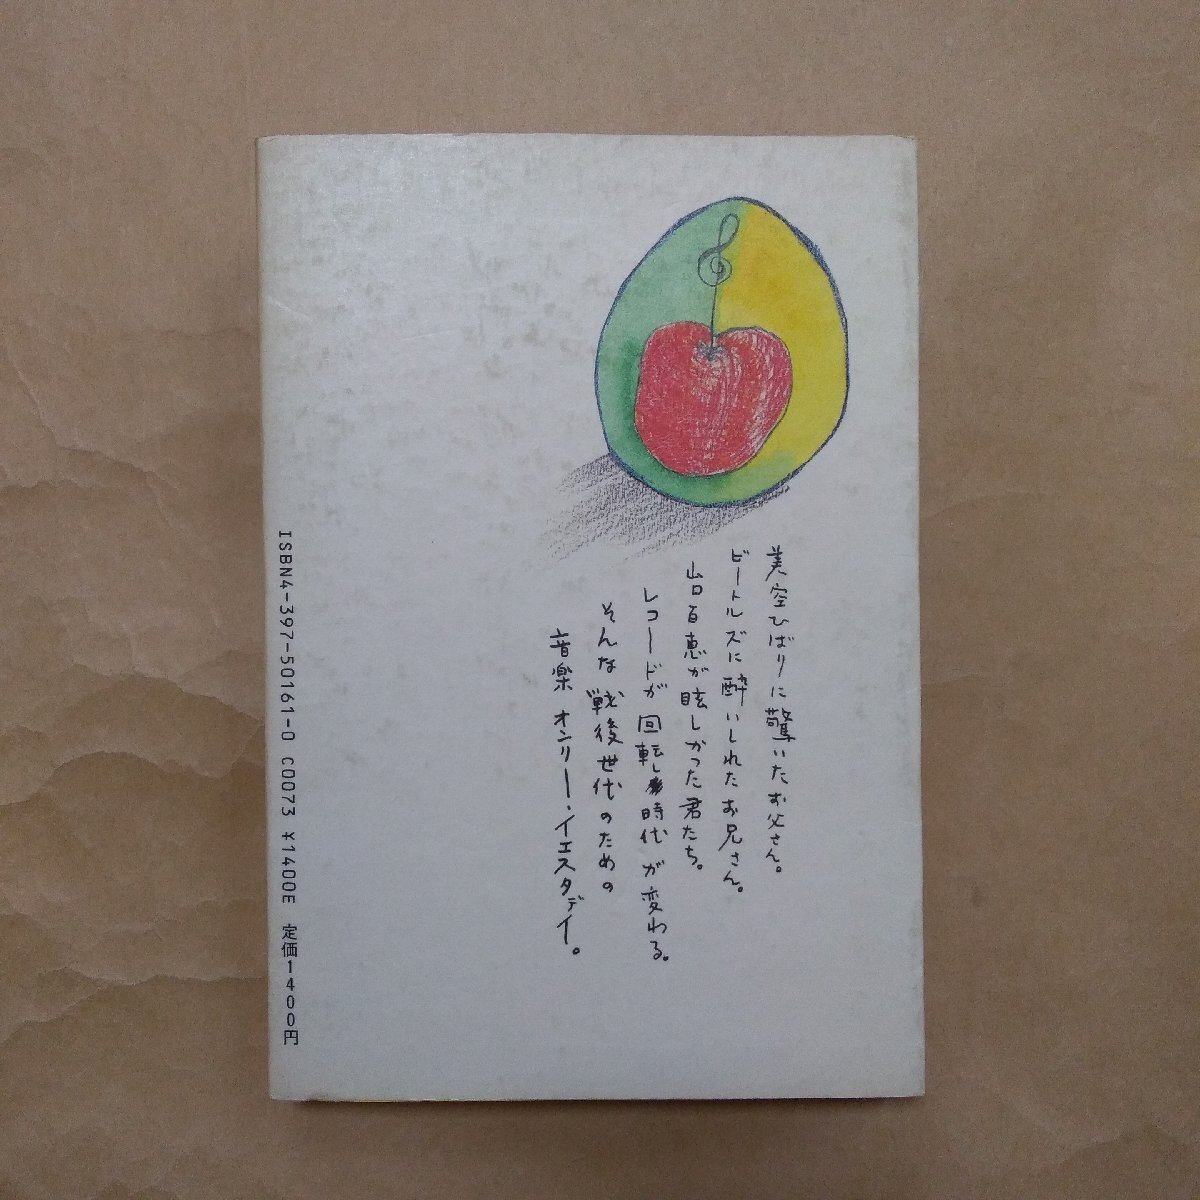 ◎それはリンゴの唄から始まった 伊藤強 駸々堂 戦後世代の芸能史 1984年初版の画像2